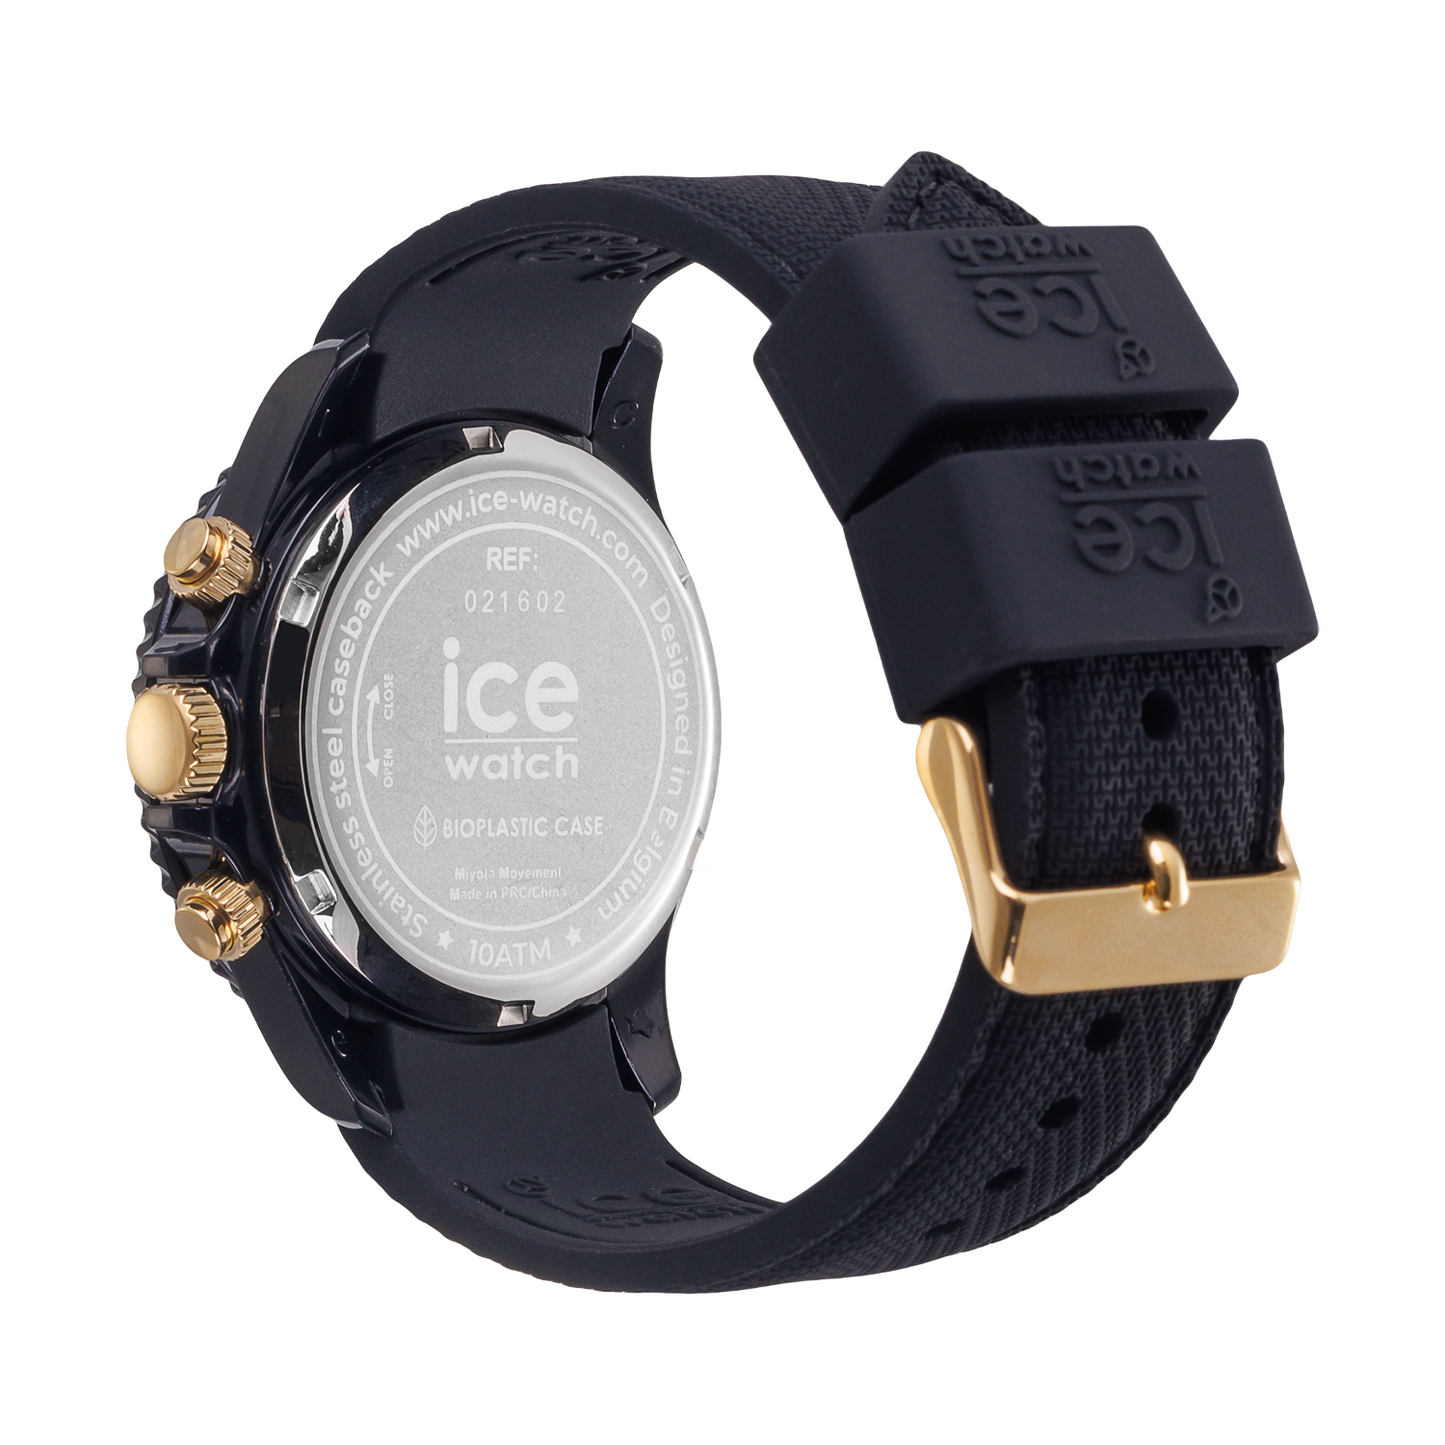 Ice-Watch | ICE Chrono - Black Gold (Medium)